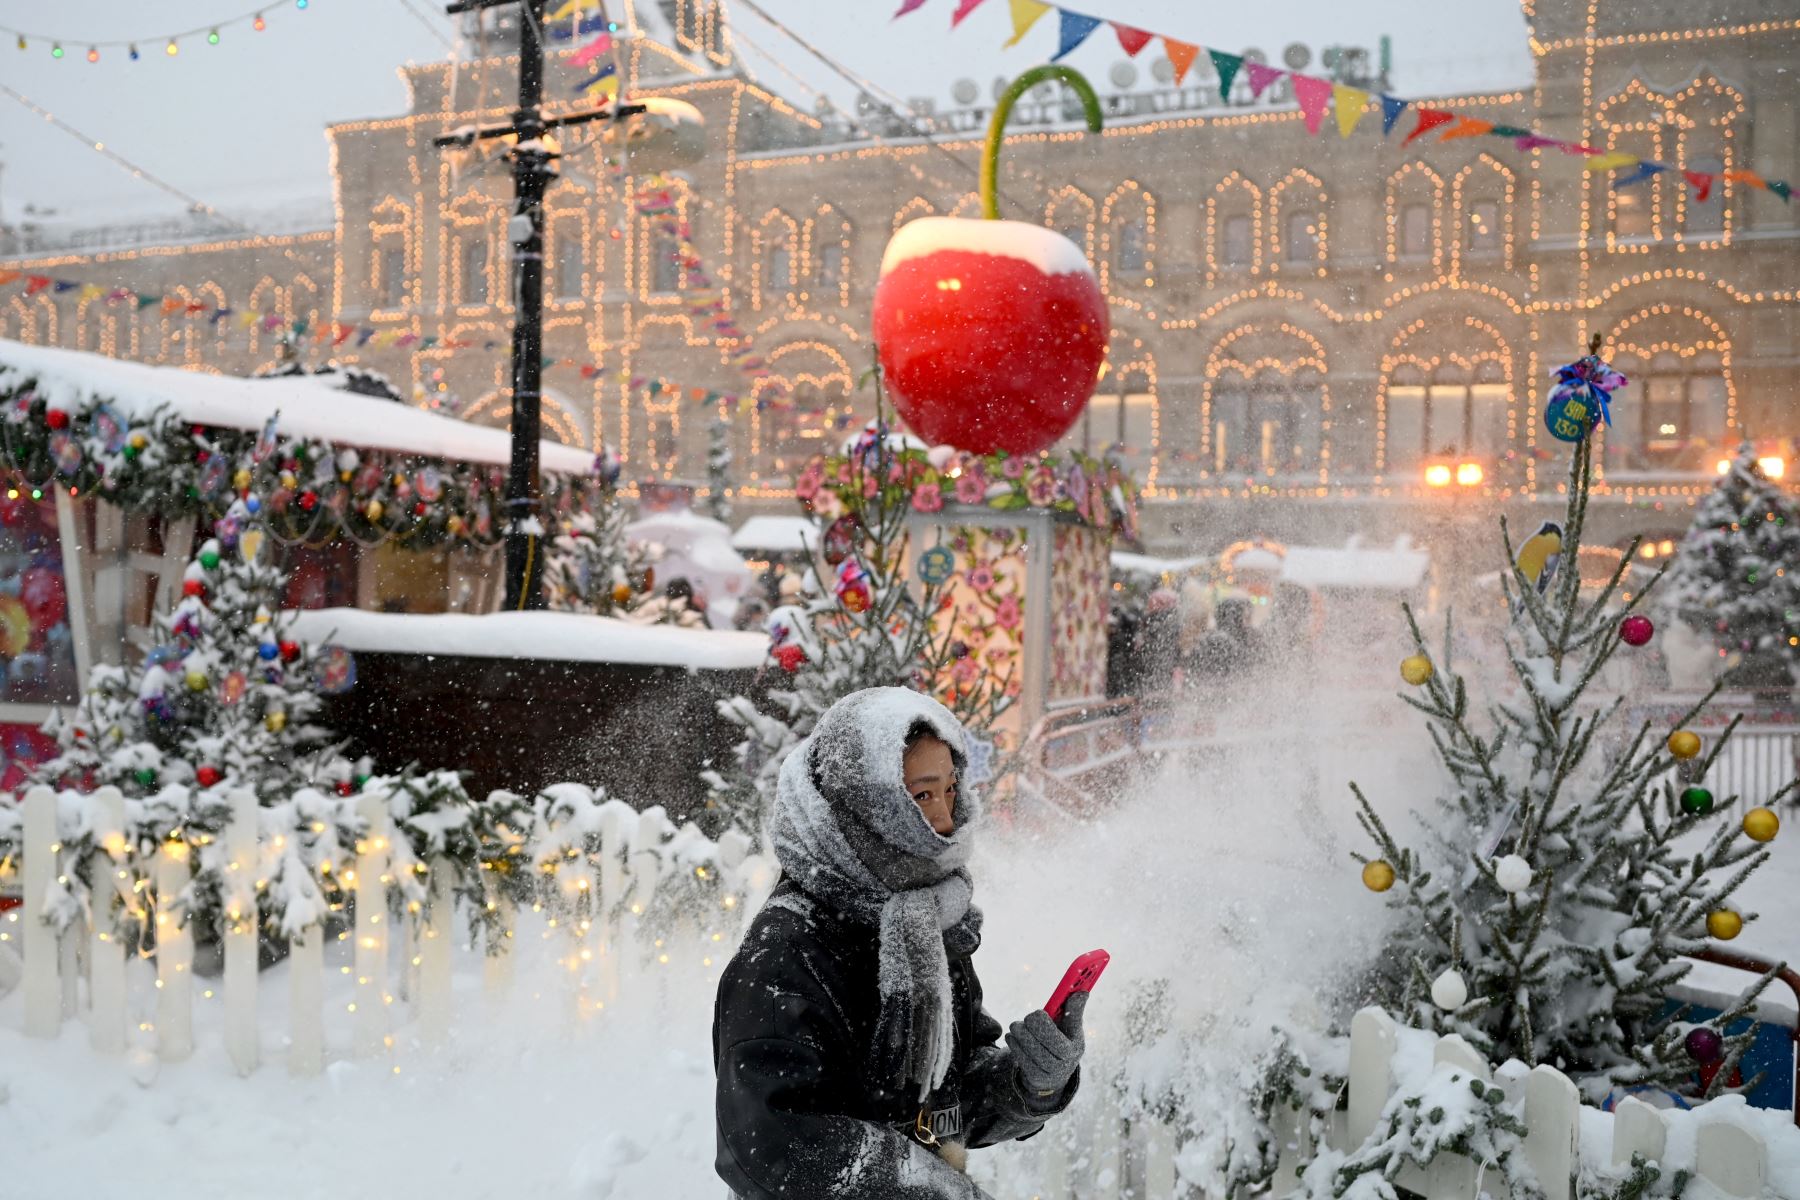 Una mujer pasa junto a los puestos del mercado navideño en la Plaza Roja cubierta de nieve en Moscú.
 Foto: AFP